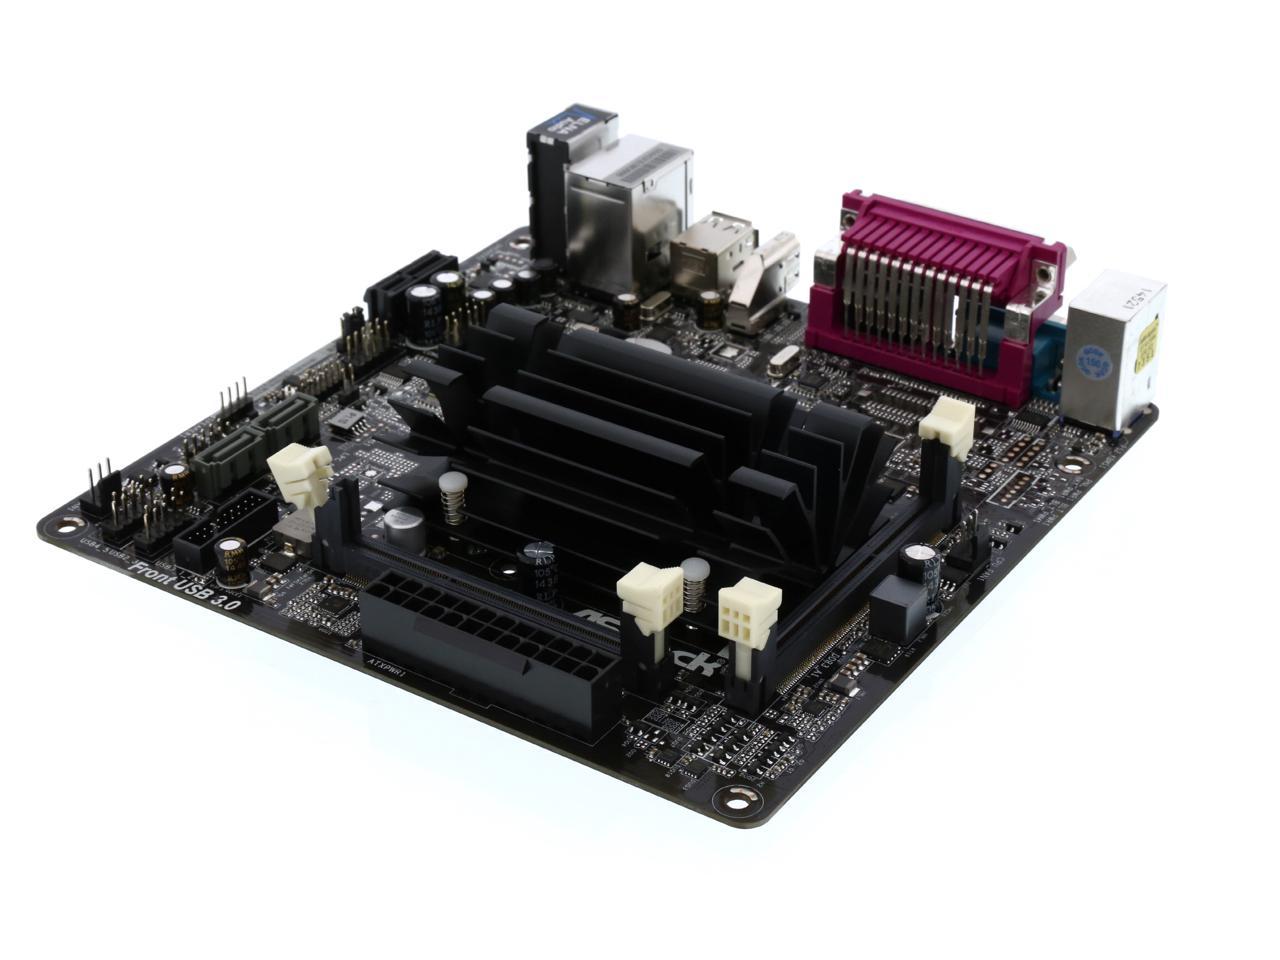 ASRock N3150B-ITX Intel Quad-Core Processor N3150 (up to 2.08 GHz) Mini